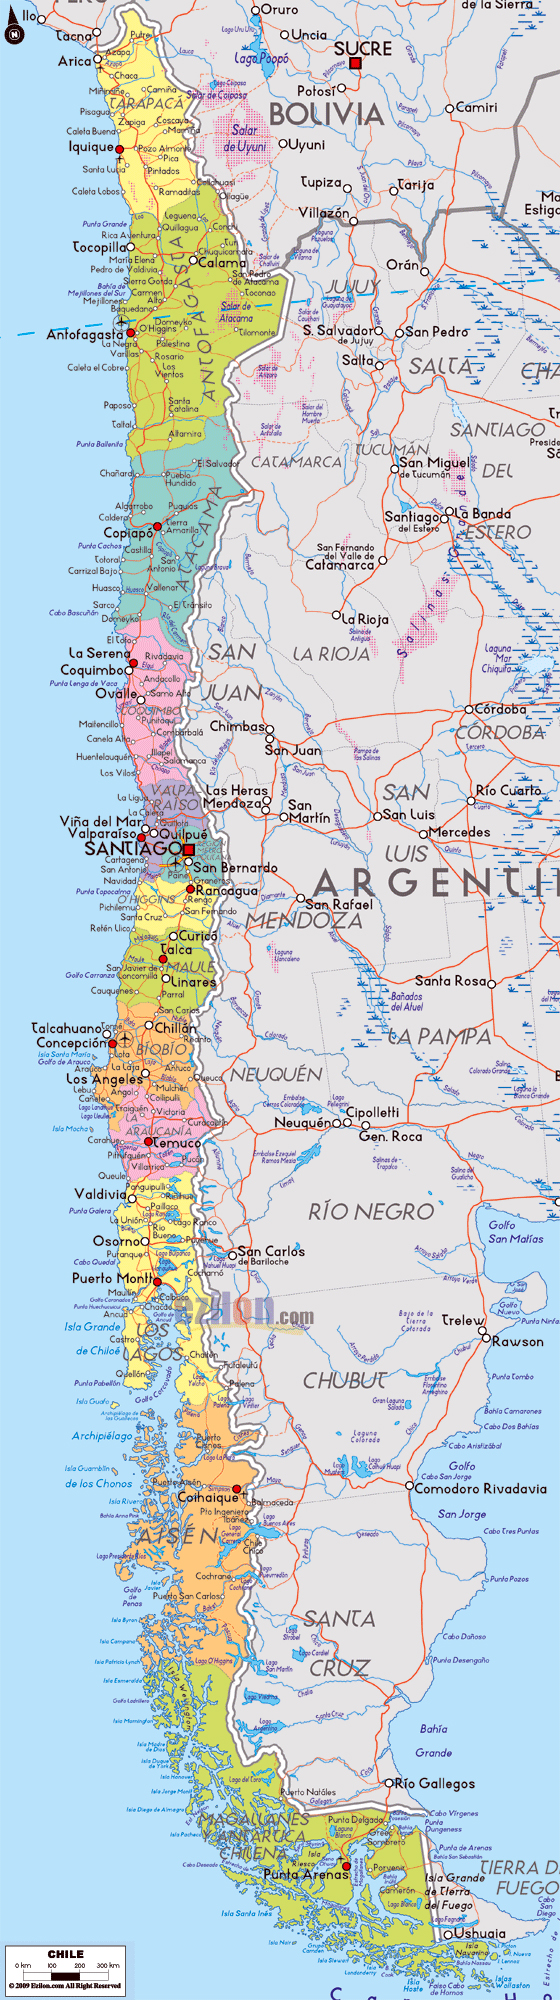 Detallado mapa político y administrativo de Chile con carreteras